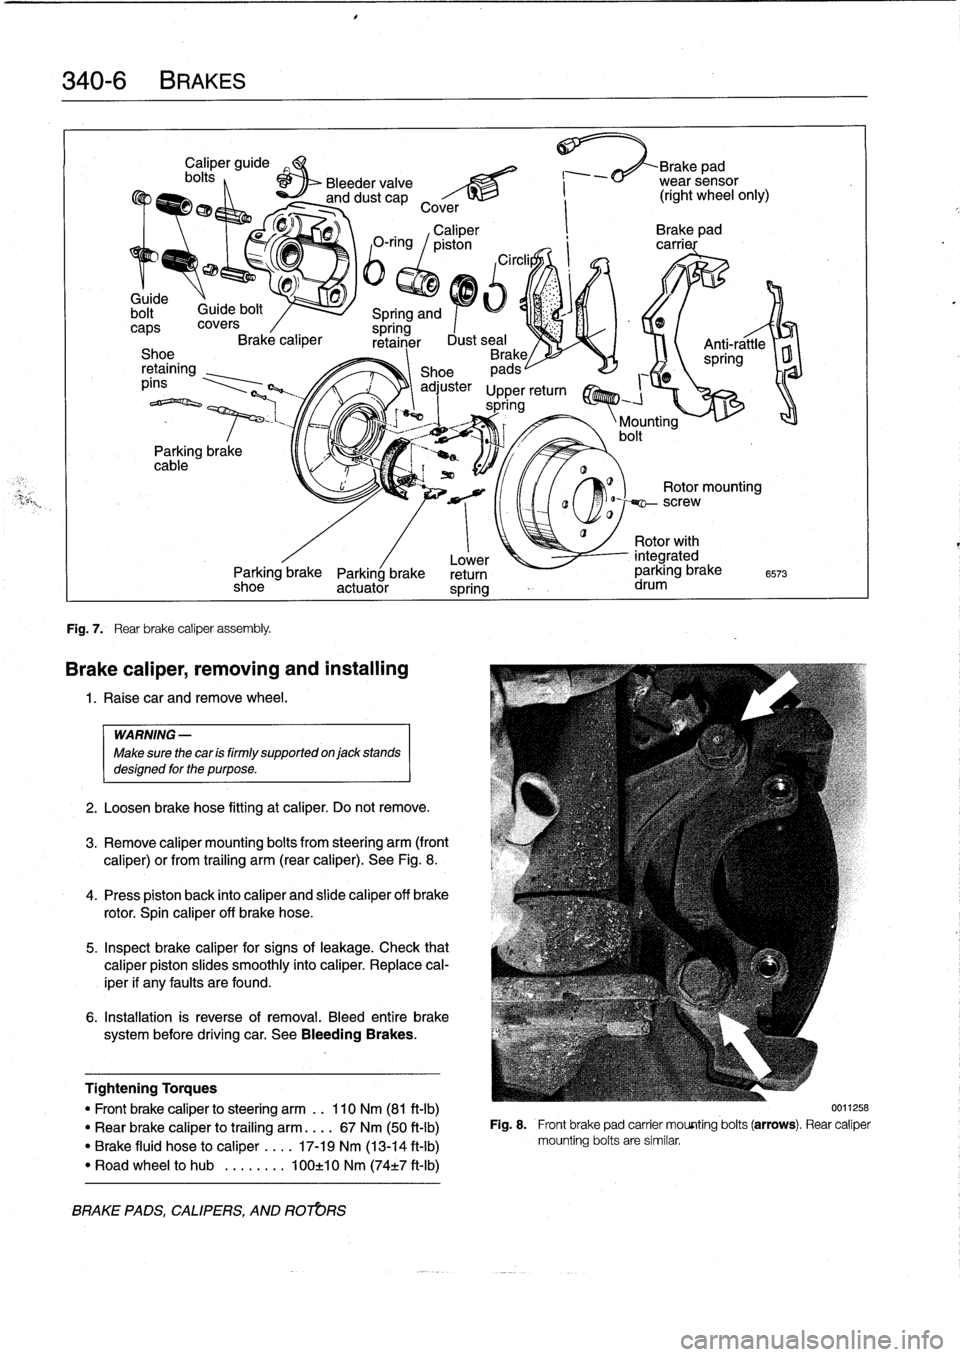 BMW 318i 1997 E36 User Guide 
340-
6BRAKES

bolt~

	

Guide
bolt

caps
covers
Brake
caliper
Shoe
retaining
píns

Parking
brake
cable

Fig
.
7
.

	

Rear
brake
caliper
assembly
.

Caliper
guide

	

Brake

	

ad
bolts
,

	

Bleede